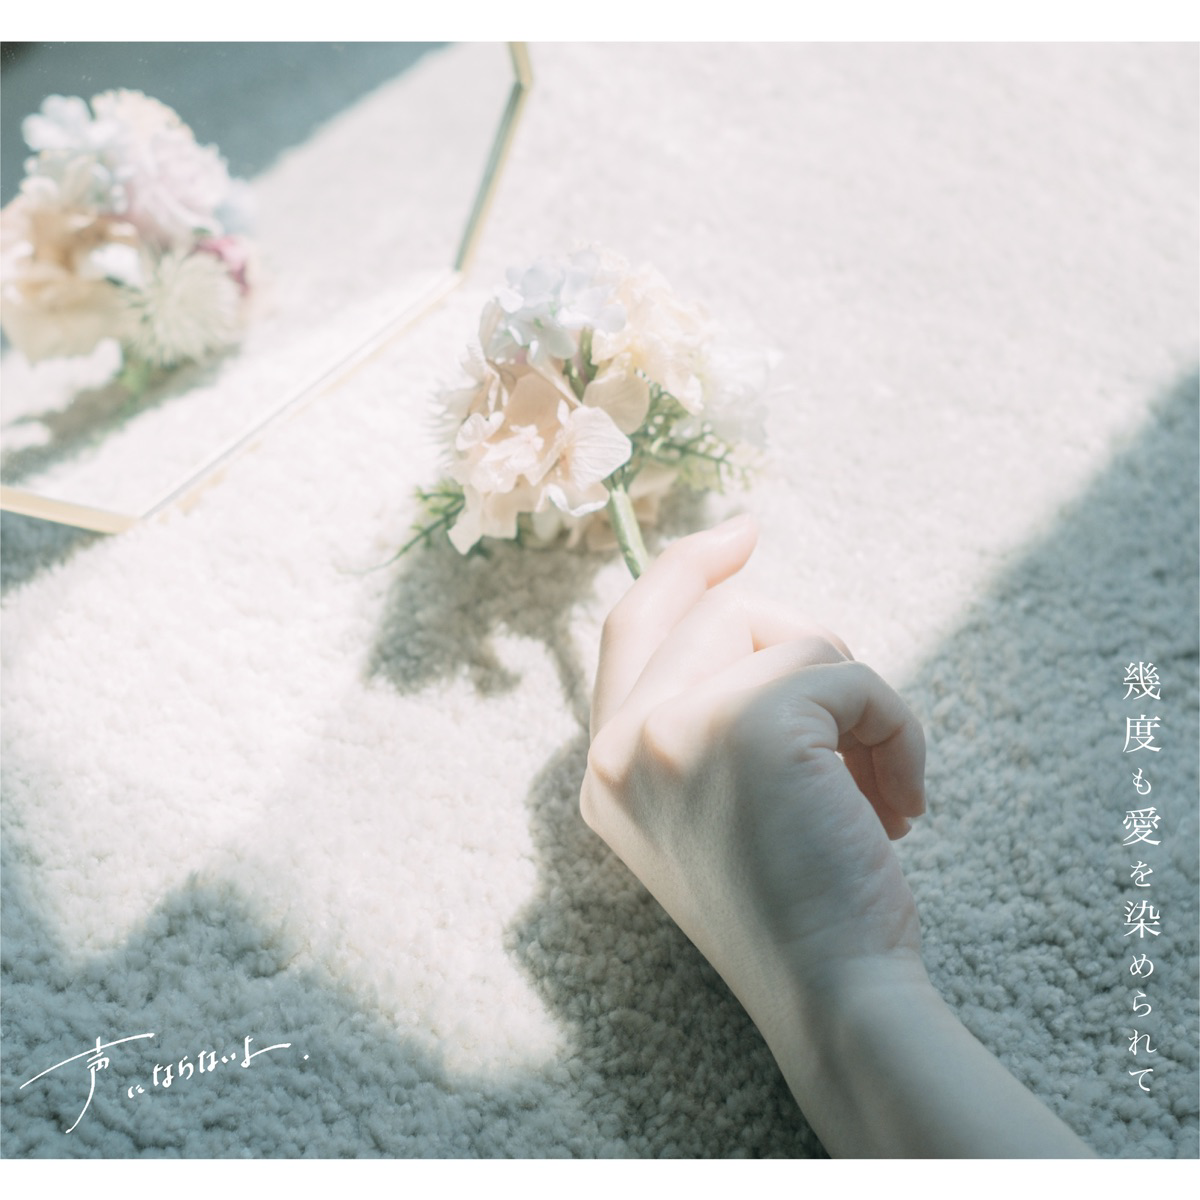 Koeninaranaiyo - Dyed In Love Cover